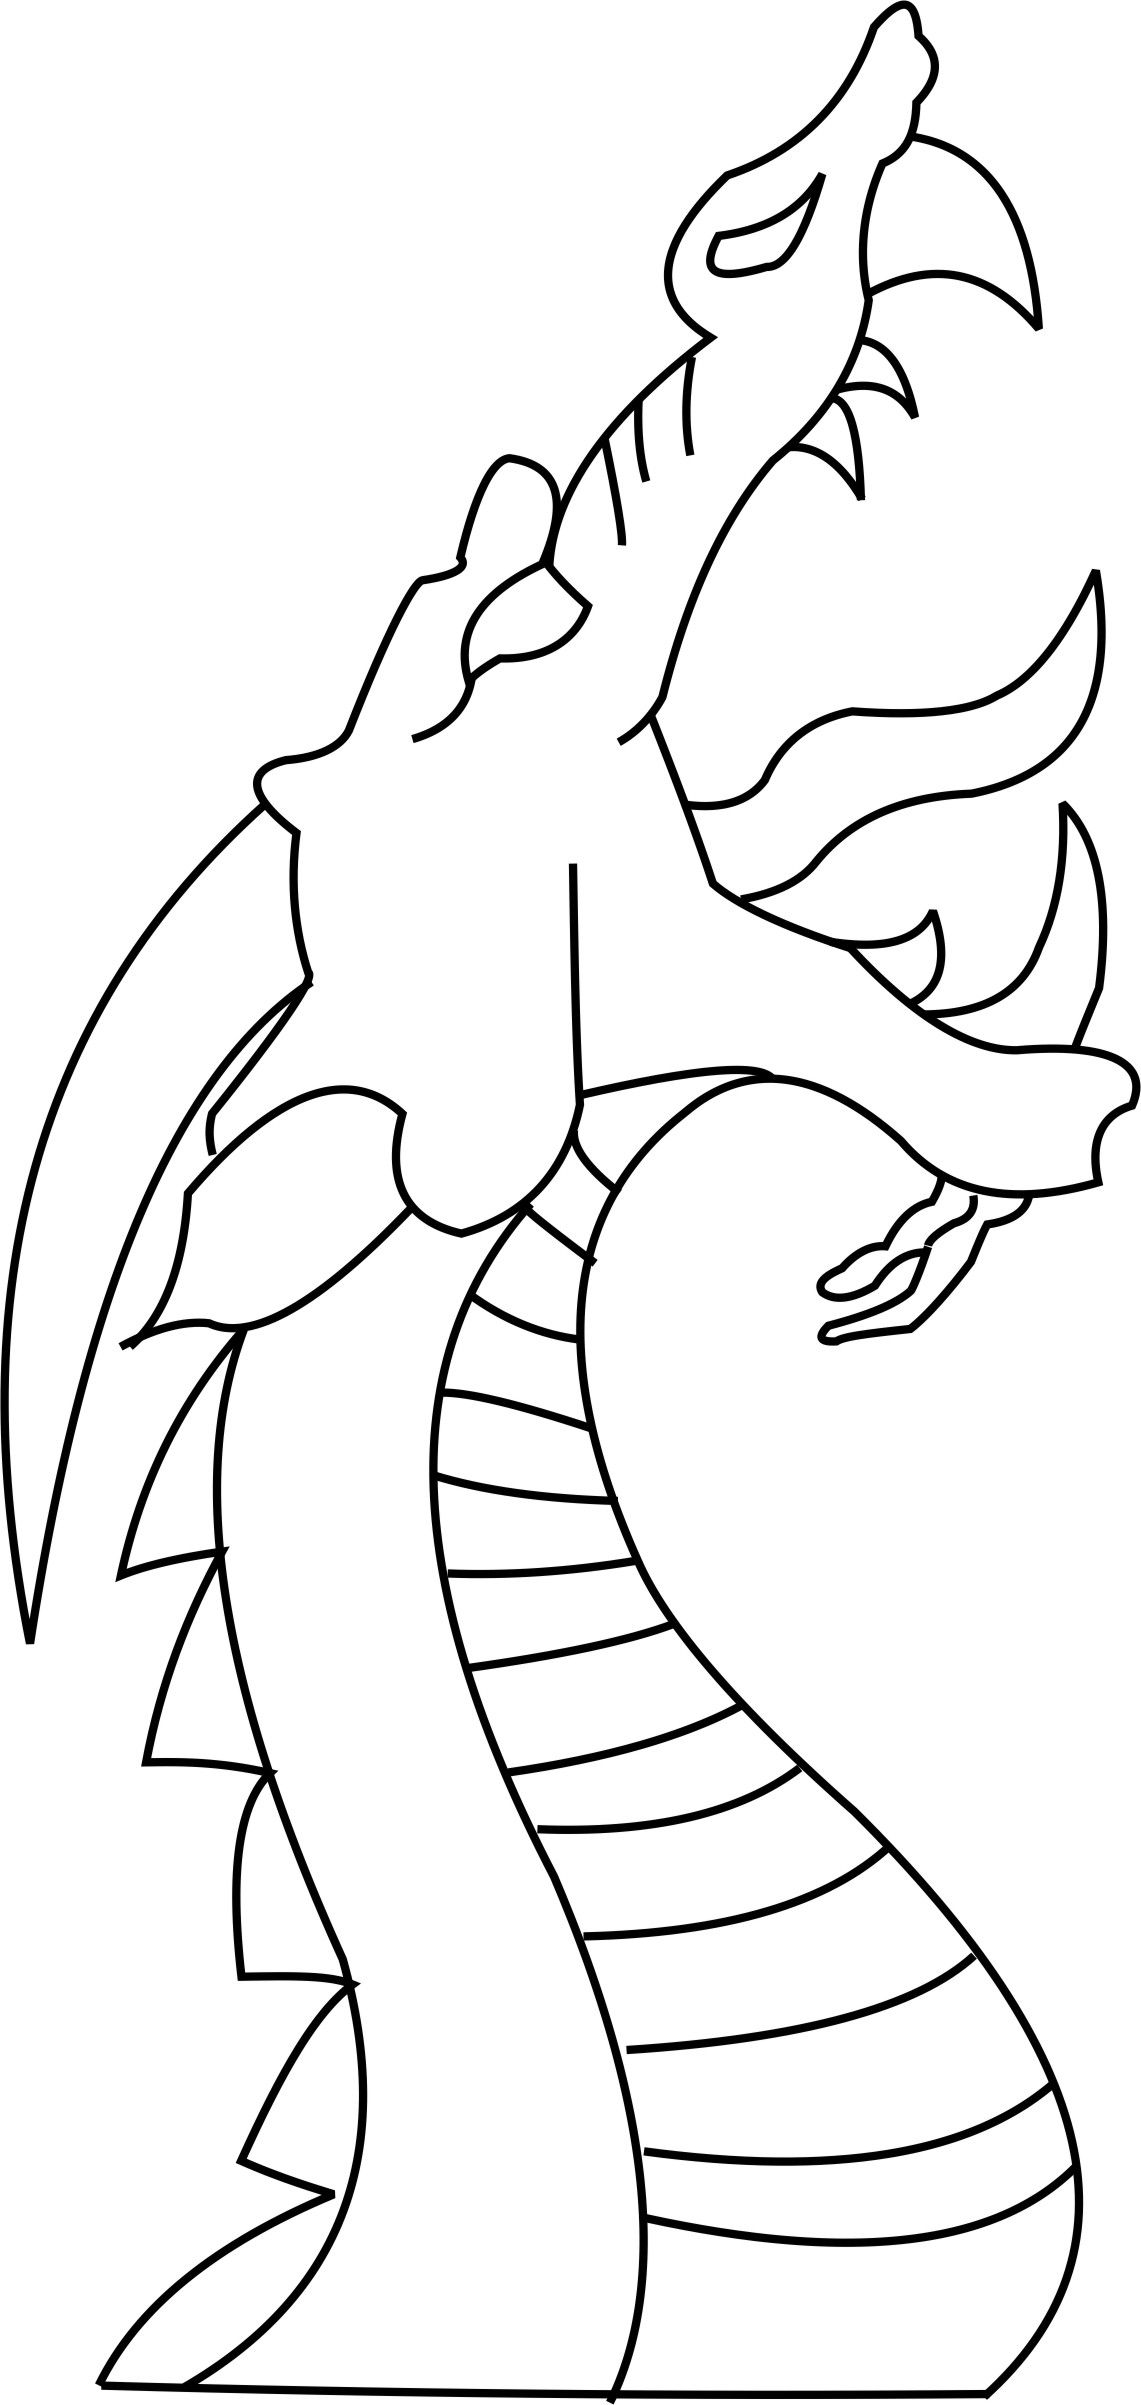 Dragon Head Drawing Modern Sketch